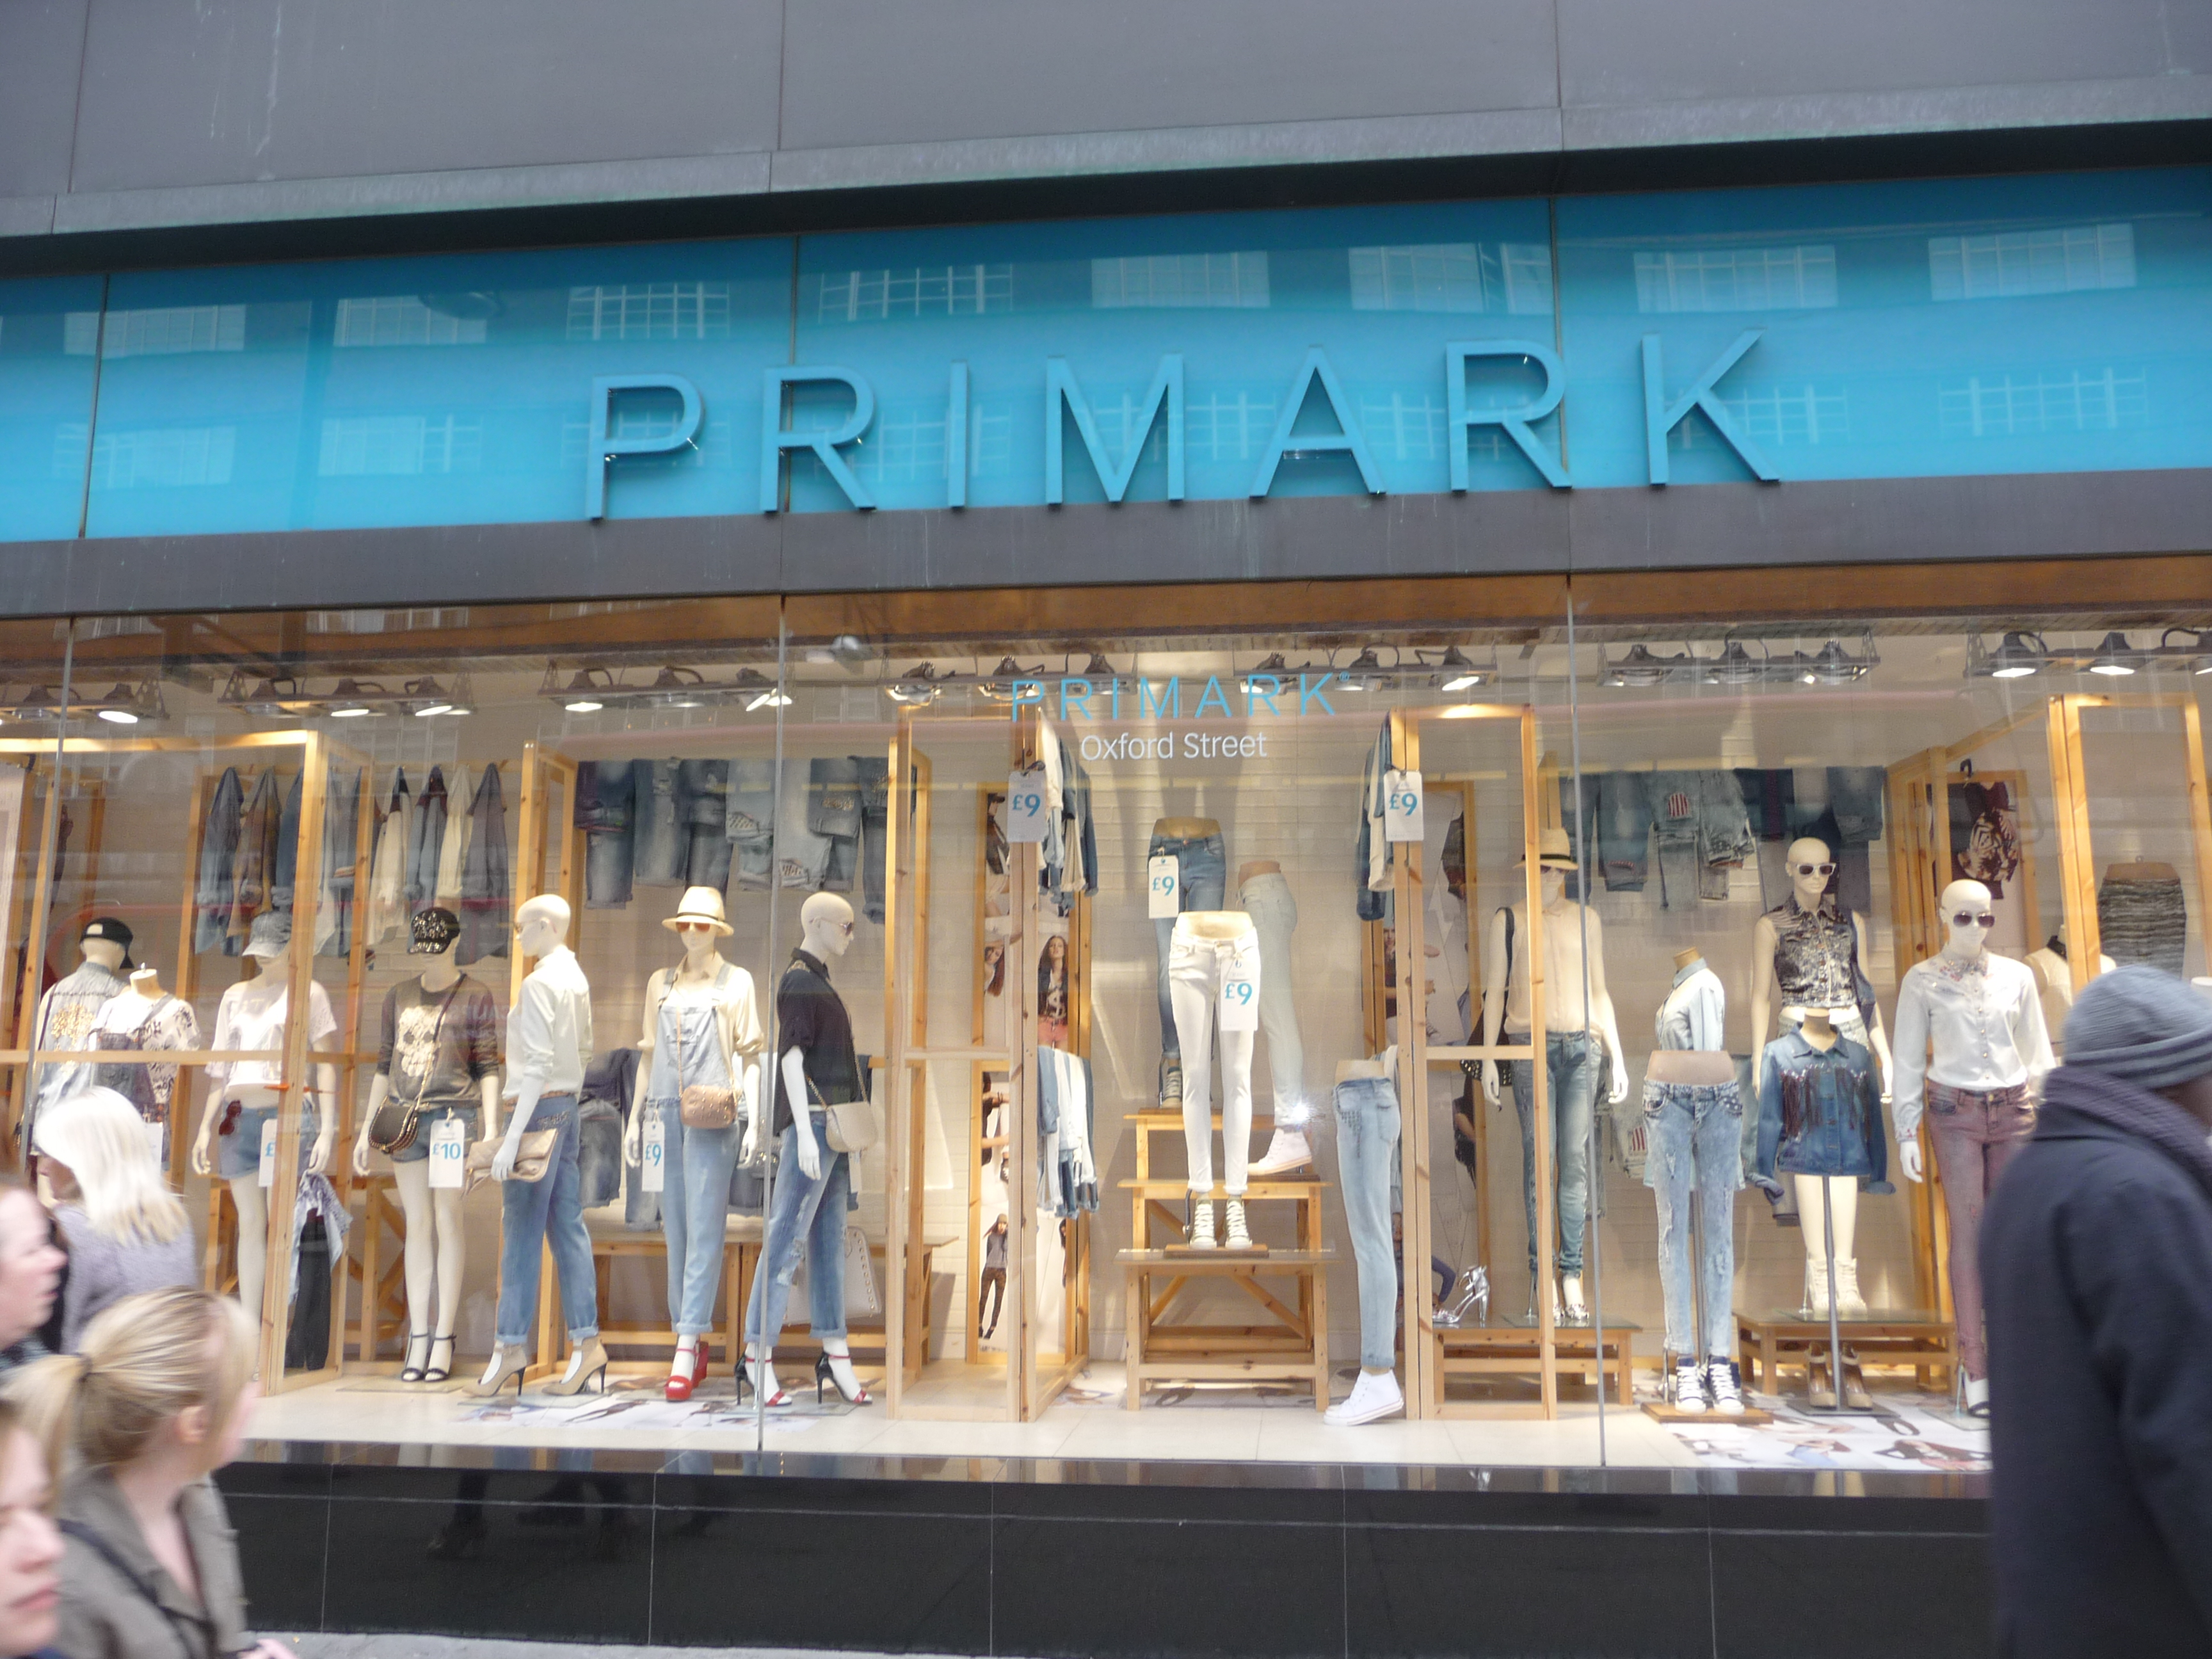 Potvrzeno: Primark otevře svou první prodejnu v centru Prahy